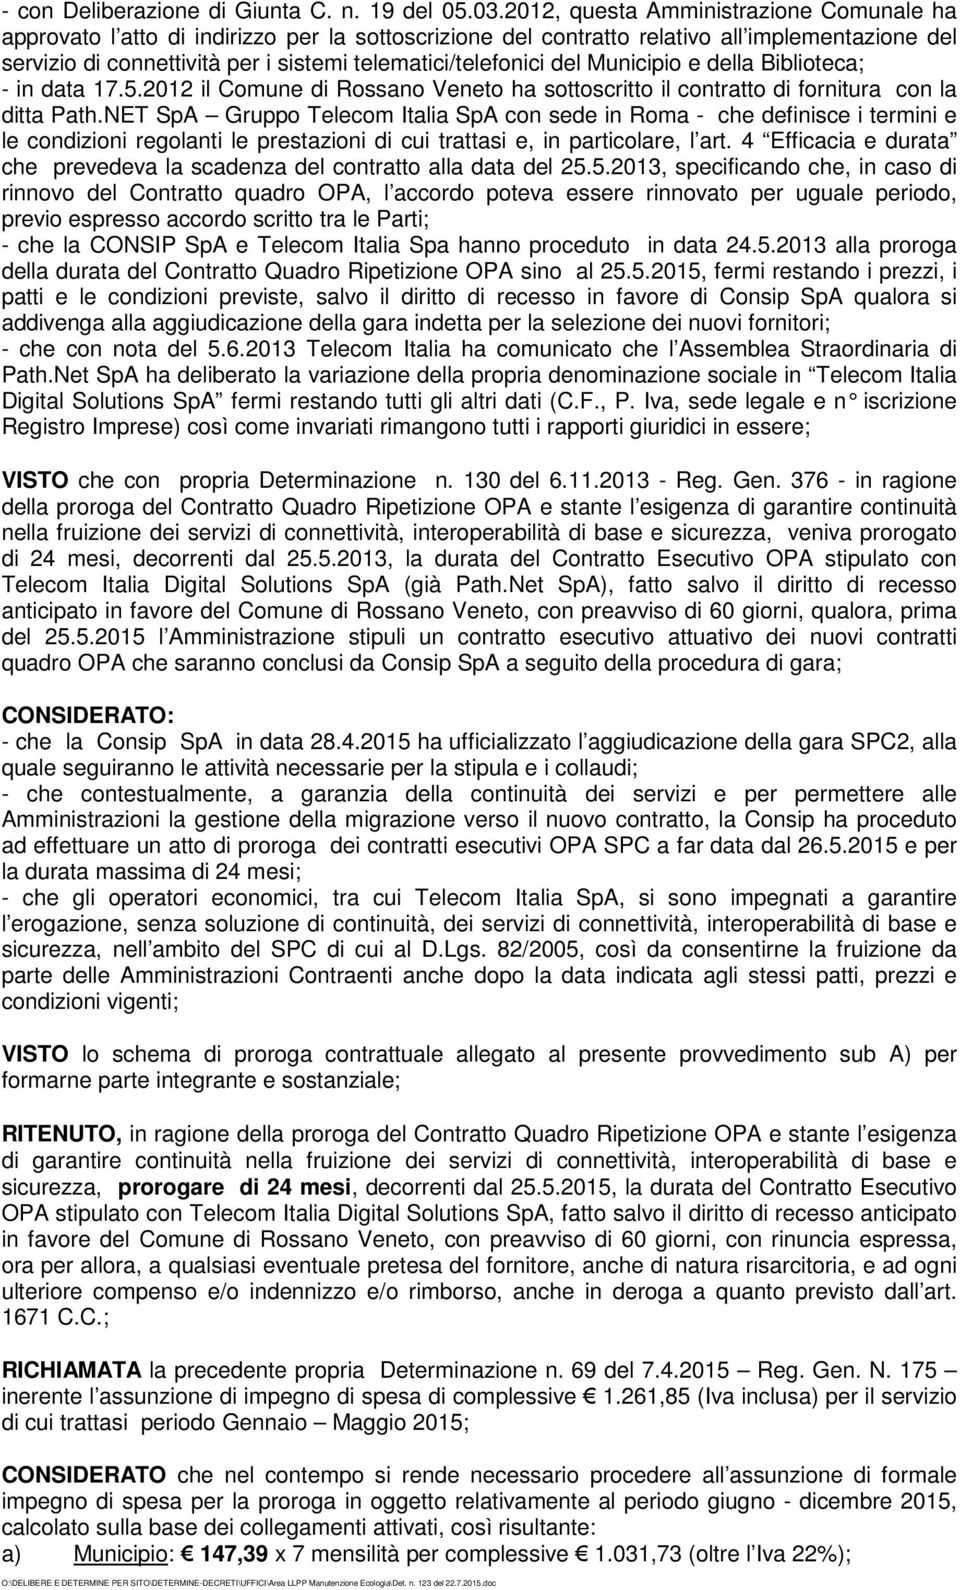 telematici/telefonici del Municipio e della Biblioteca; - in data 17.5.2012 il Comune di Rossano Veneto ha sottoscritto il contratto di fornitura con la ditta Path.